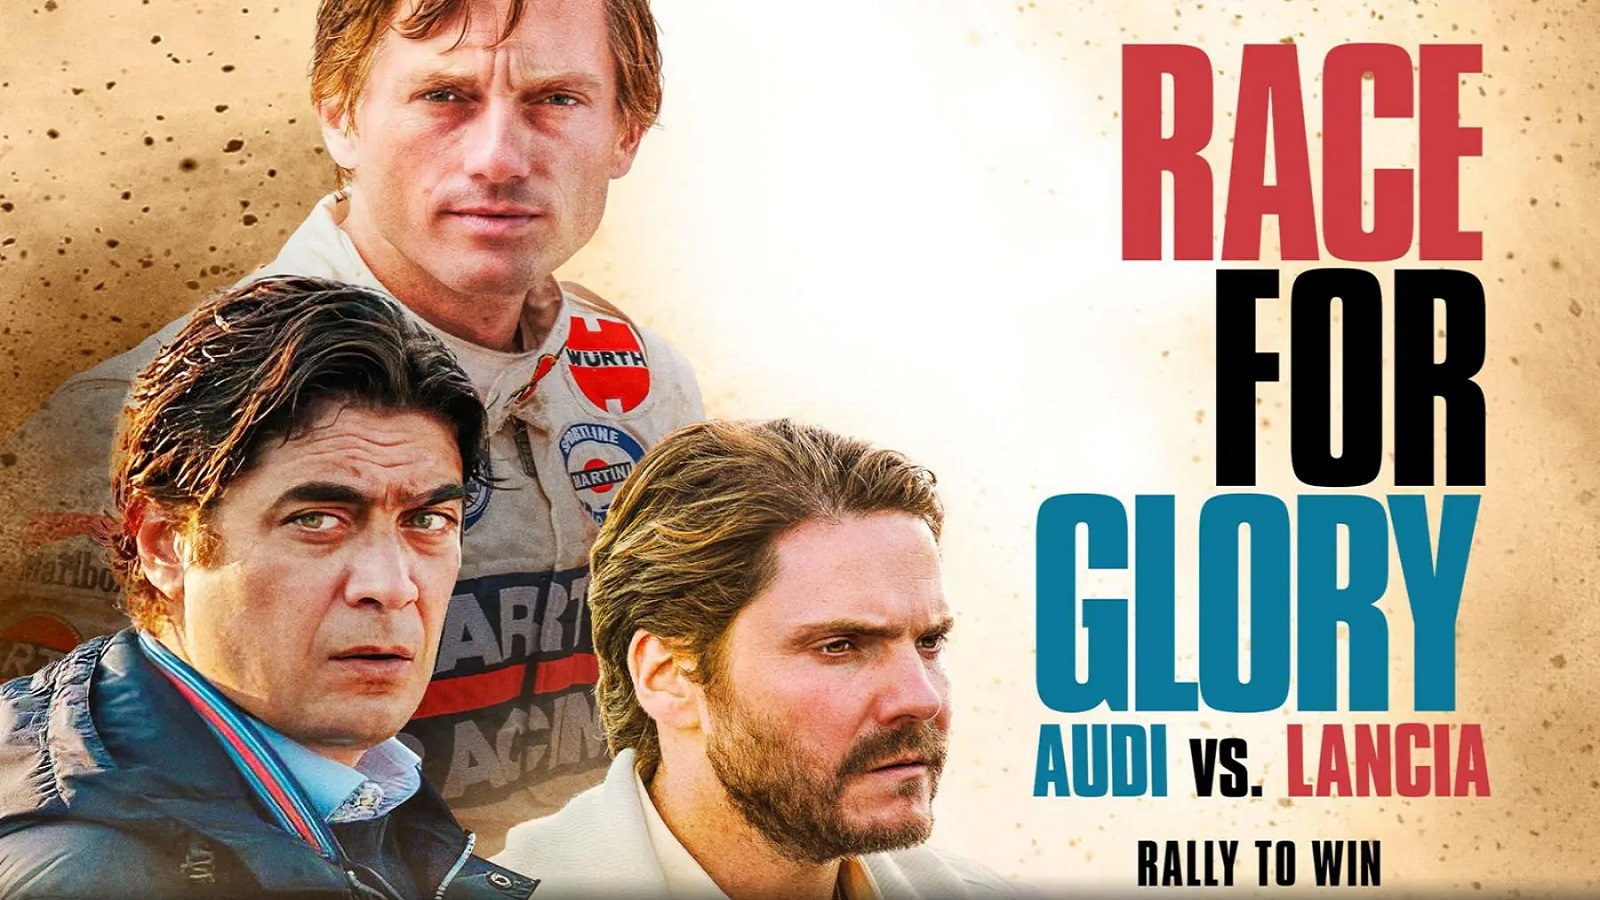 Race, Glory, Audi, Lancia